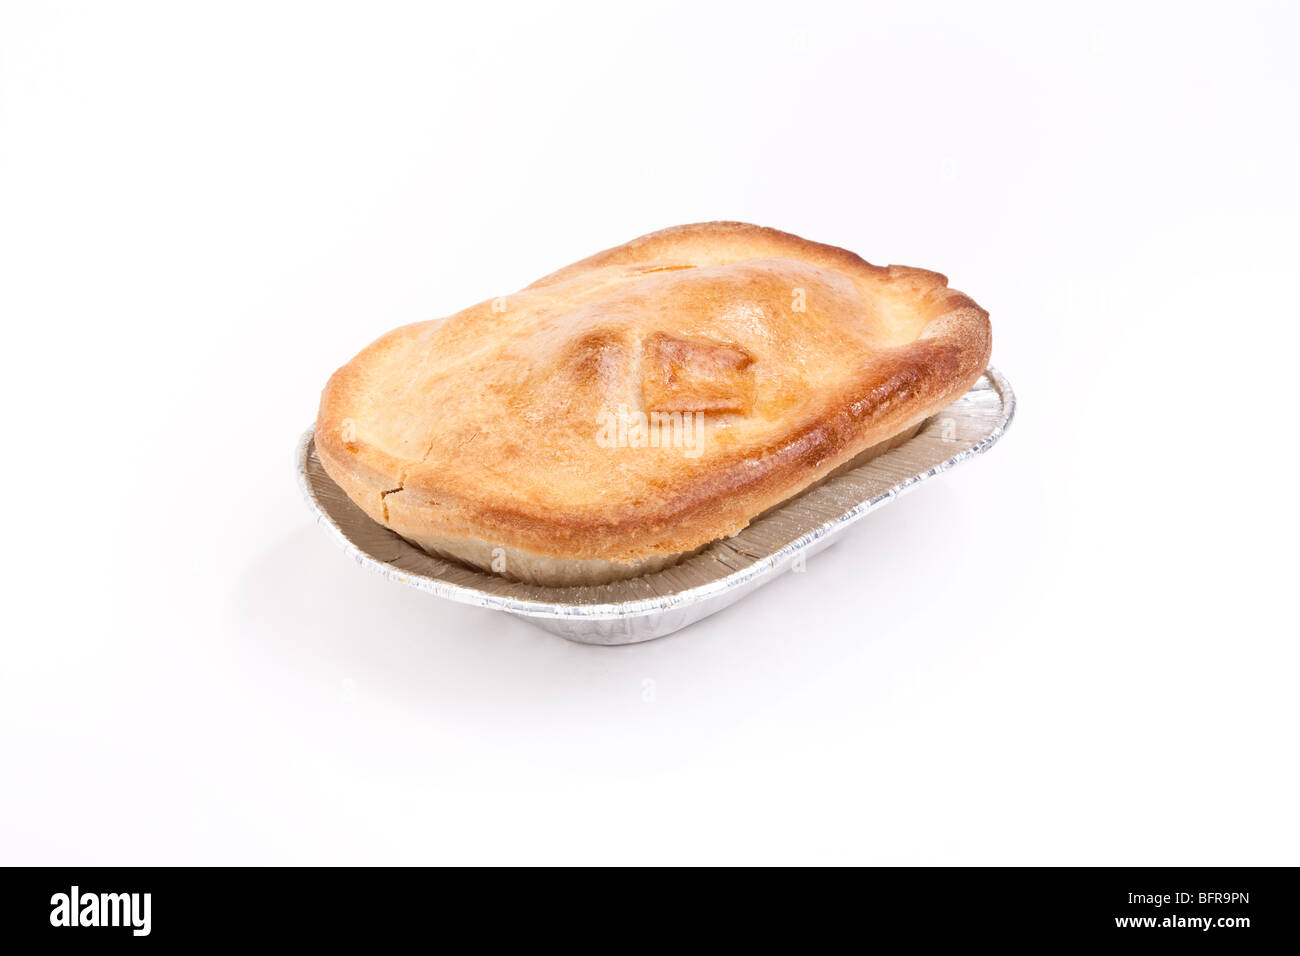 Einzelne kurze Kruste Gebäck Steak Pie in Silberfolie Tray auf weißen Hintergrund isoliert Stockfoto